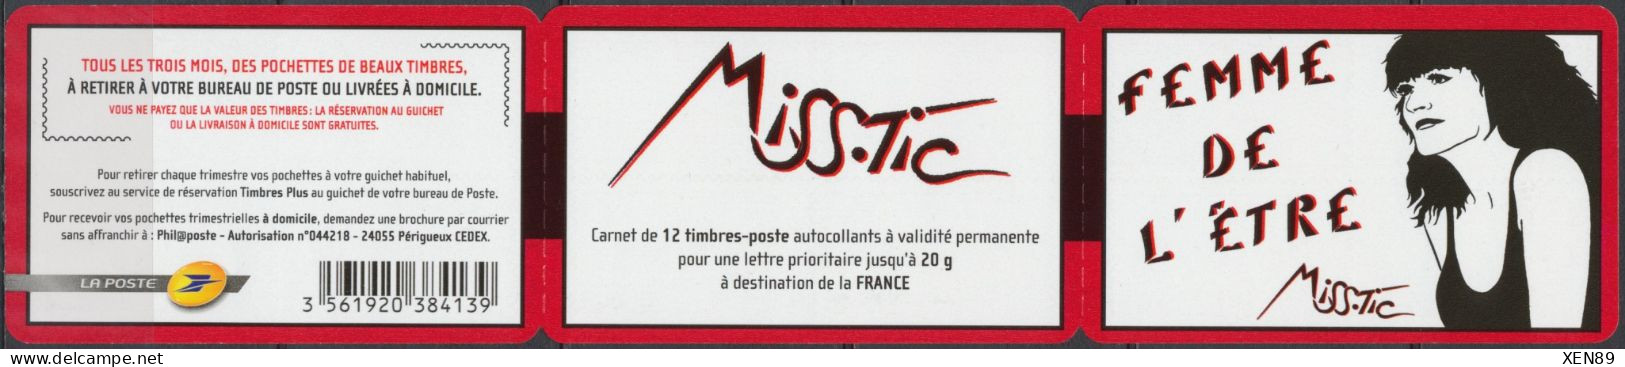 2011 - C 538 Neuf ** - "Femme De L'être", De Miss. Tic (1956-), Artiste Plasticienne De "Street Art" - Nuevos